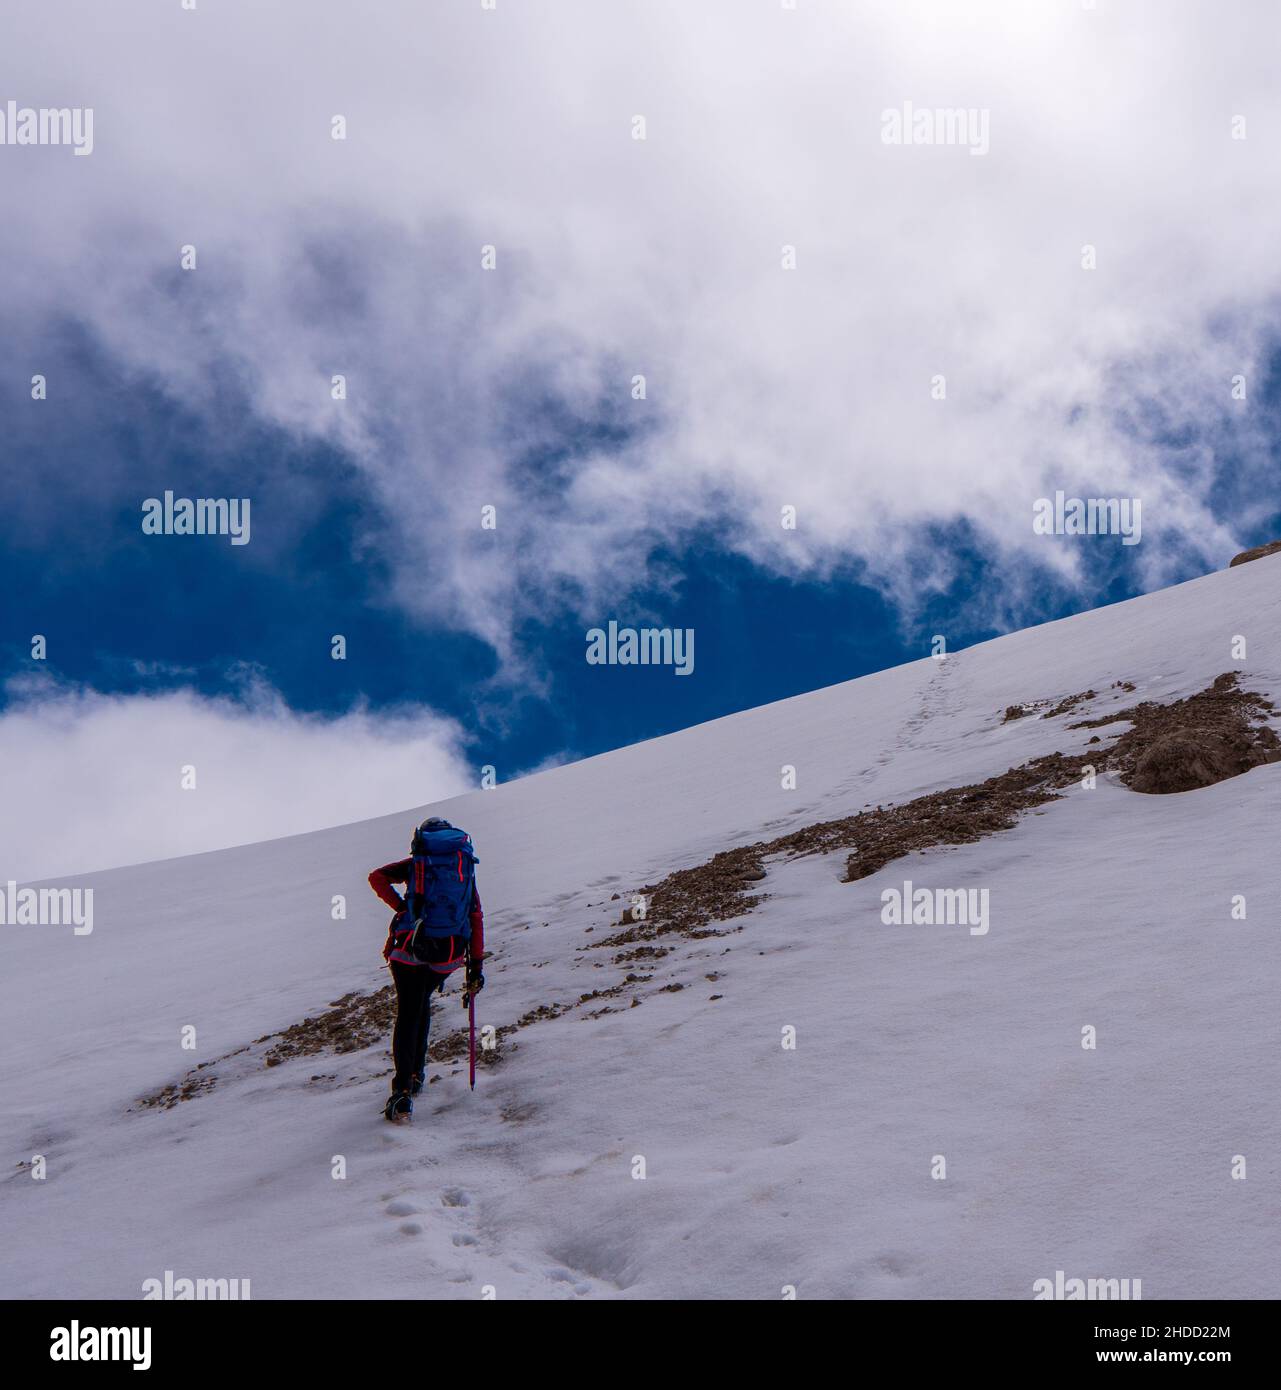 Ascent to Marmolada, Dolomites, Italy. The Marmolada Glacier. Tourist climbing on Marmolada mountain in dolomites. Ice axe in the snow. Ascending Glac Stock Photo